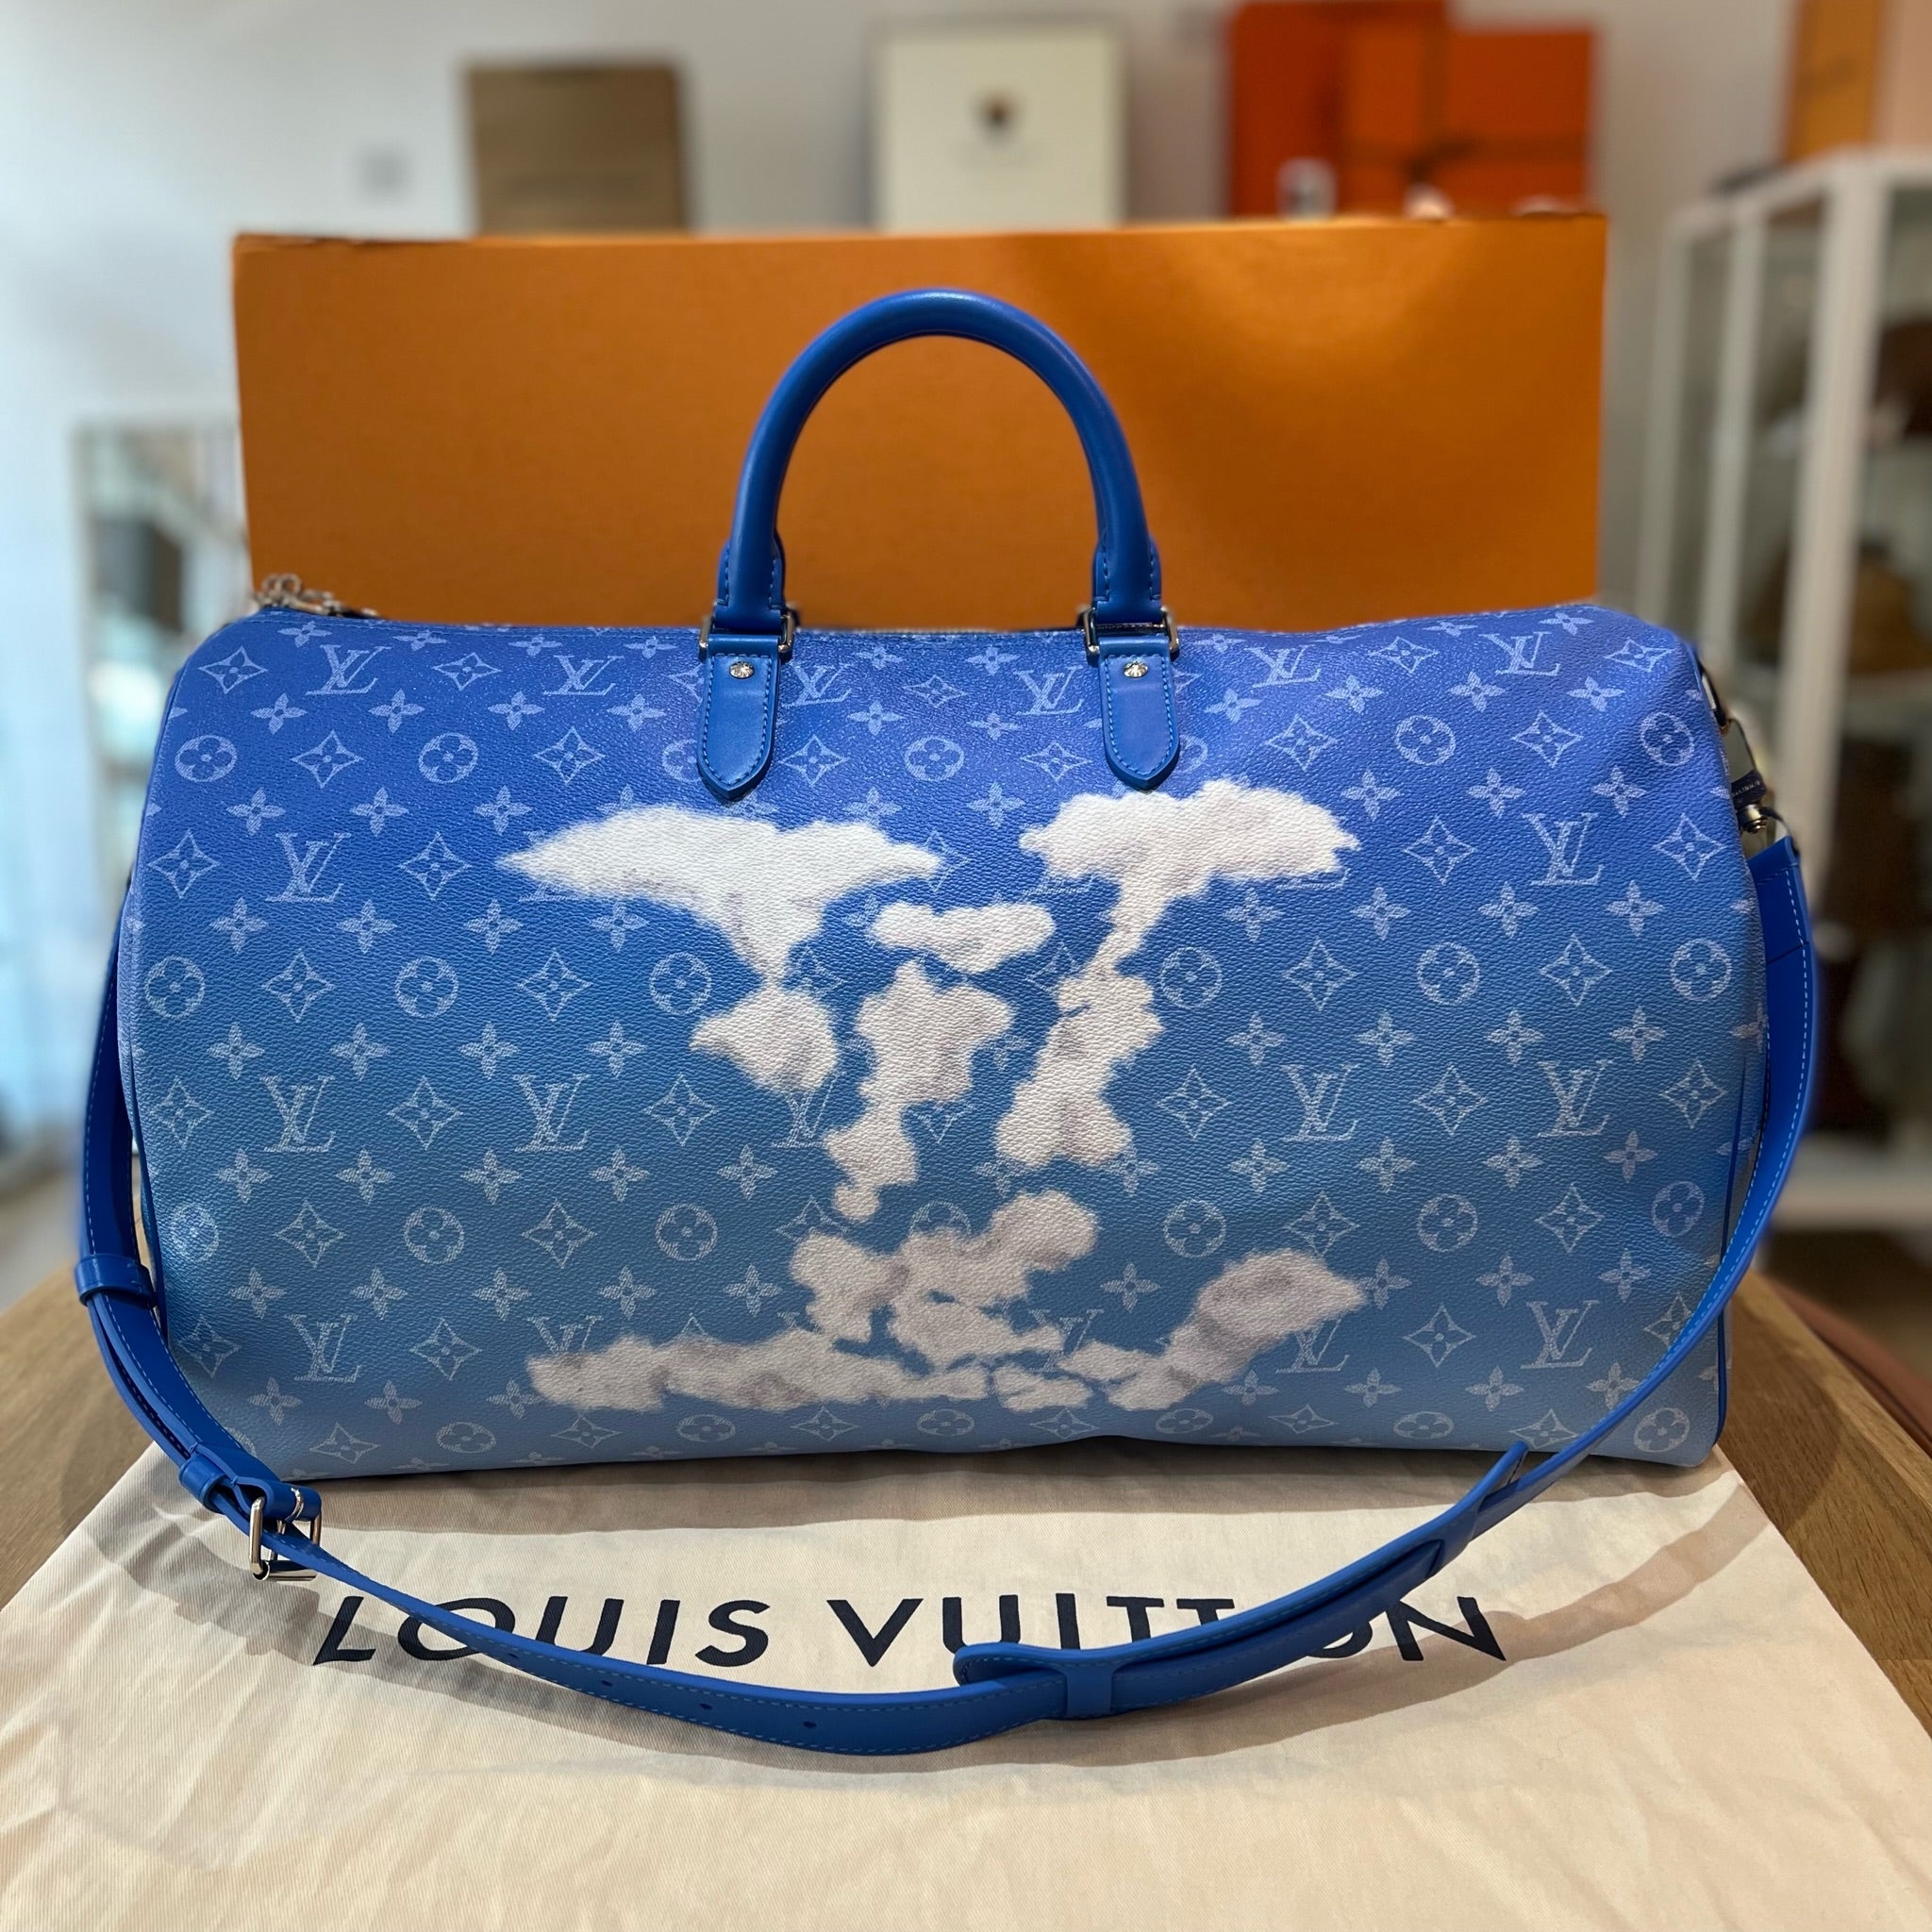 Louis Vuitton Cloud Bag Austria, SAVE 40% 